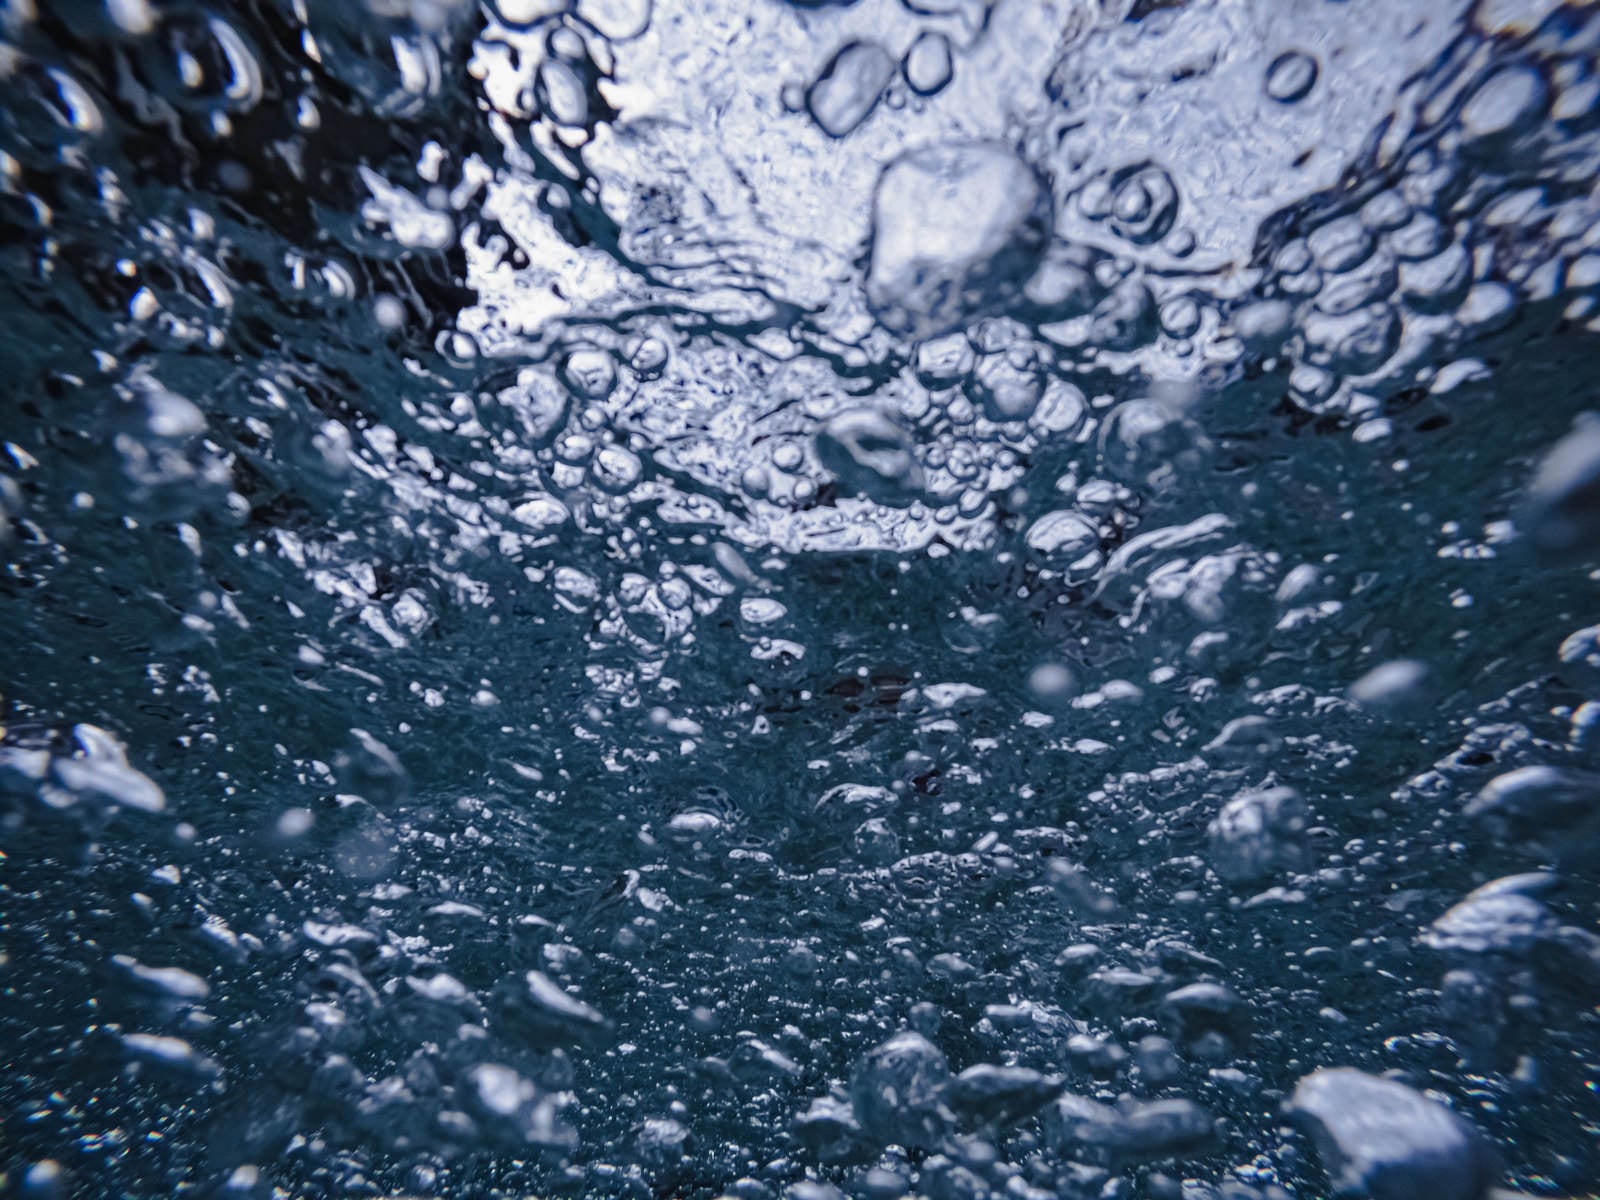 「水中に浮かぶ気泡のテクスチャー」の写真